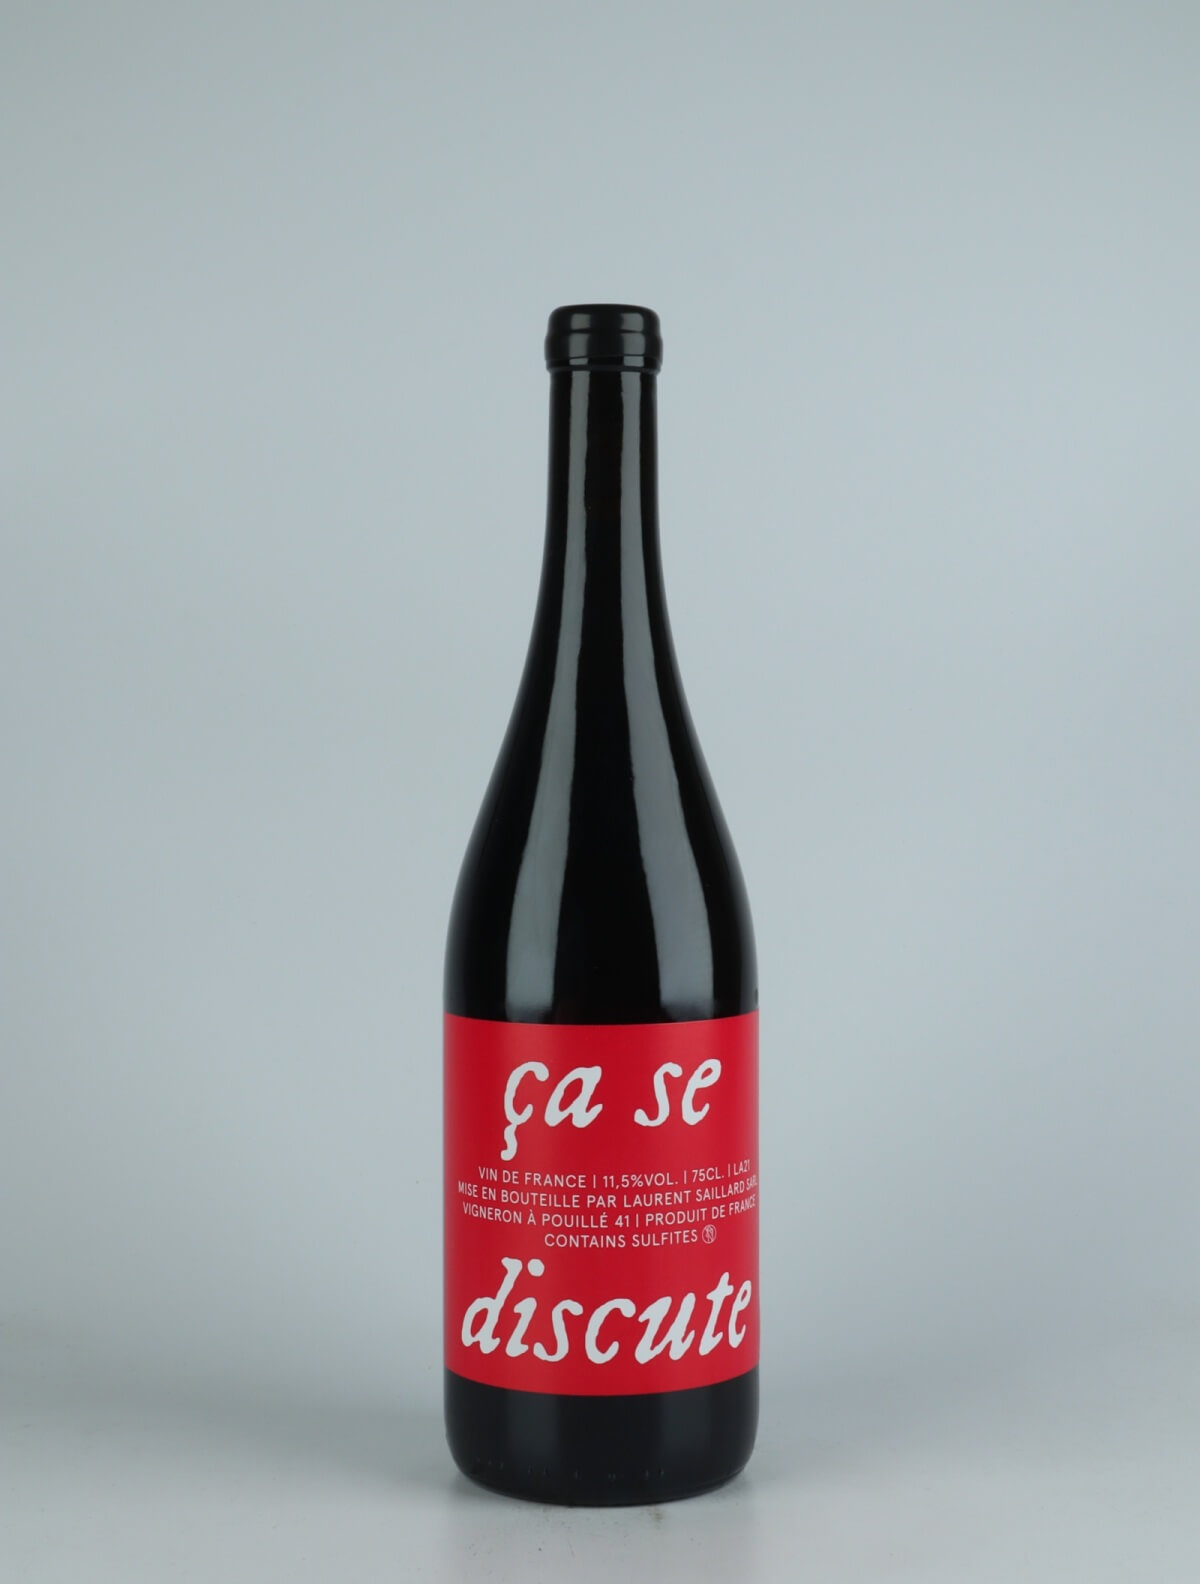 A bottle 2021 Ça se discute Red wine from Laurent Saillard, Loire in France